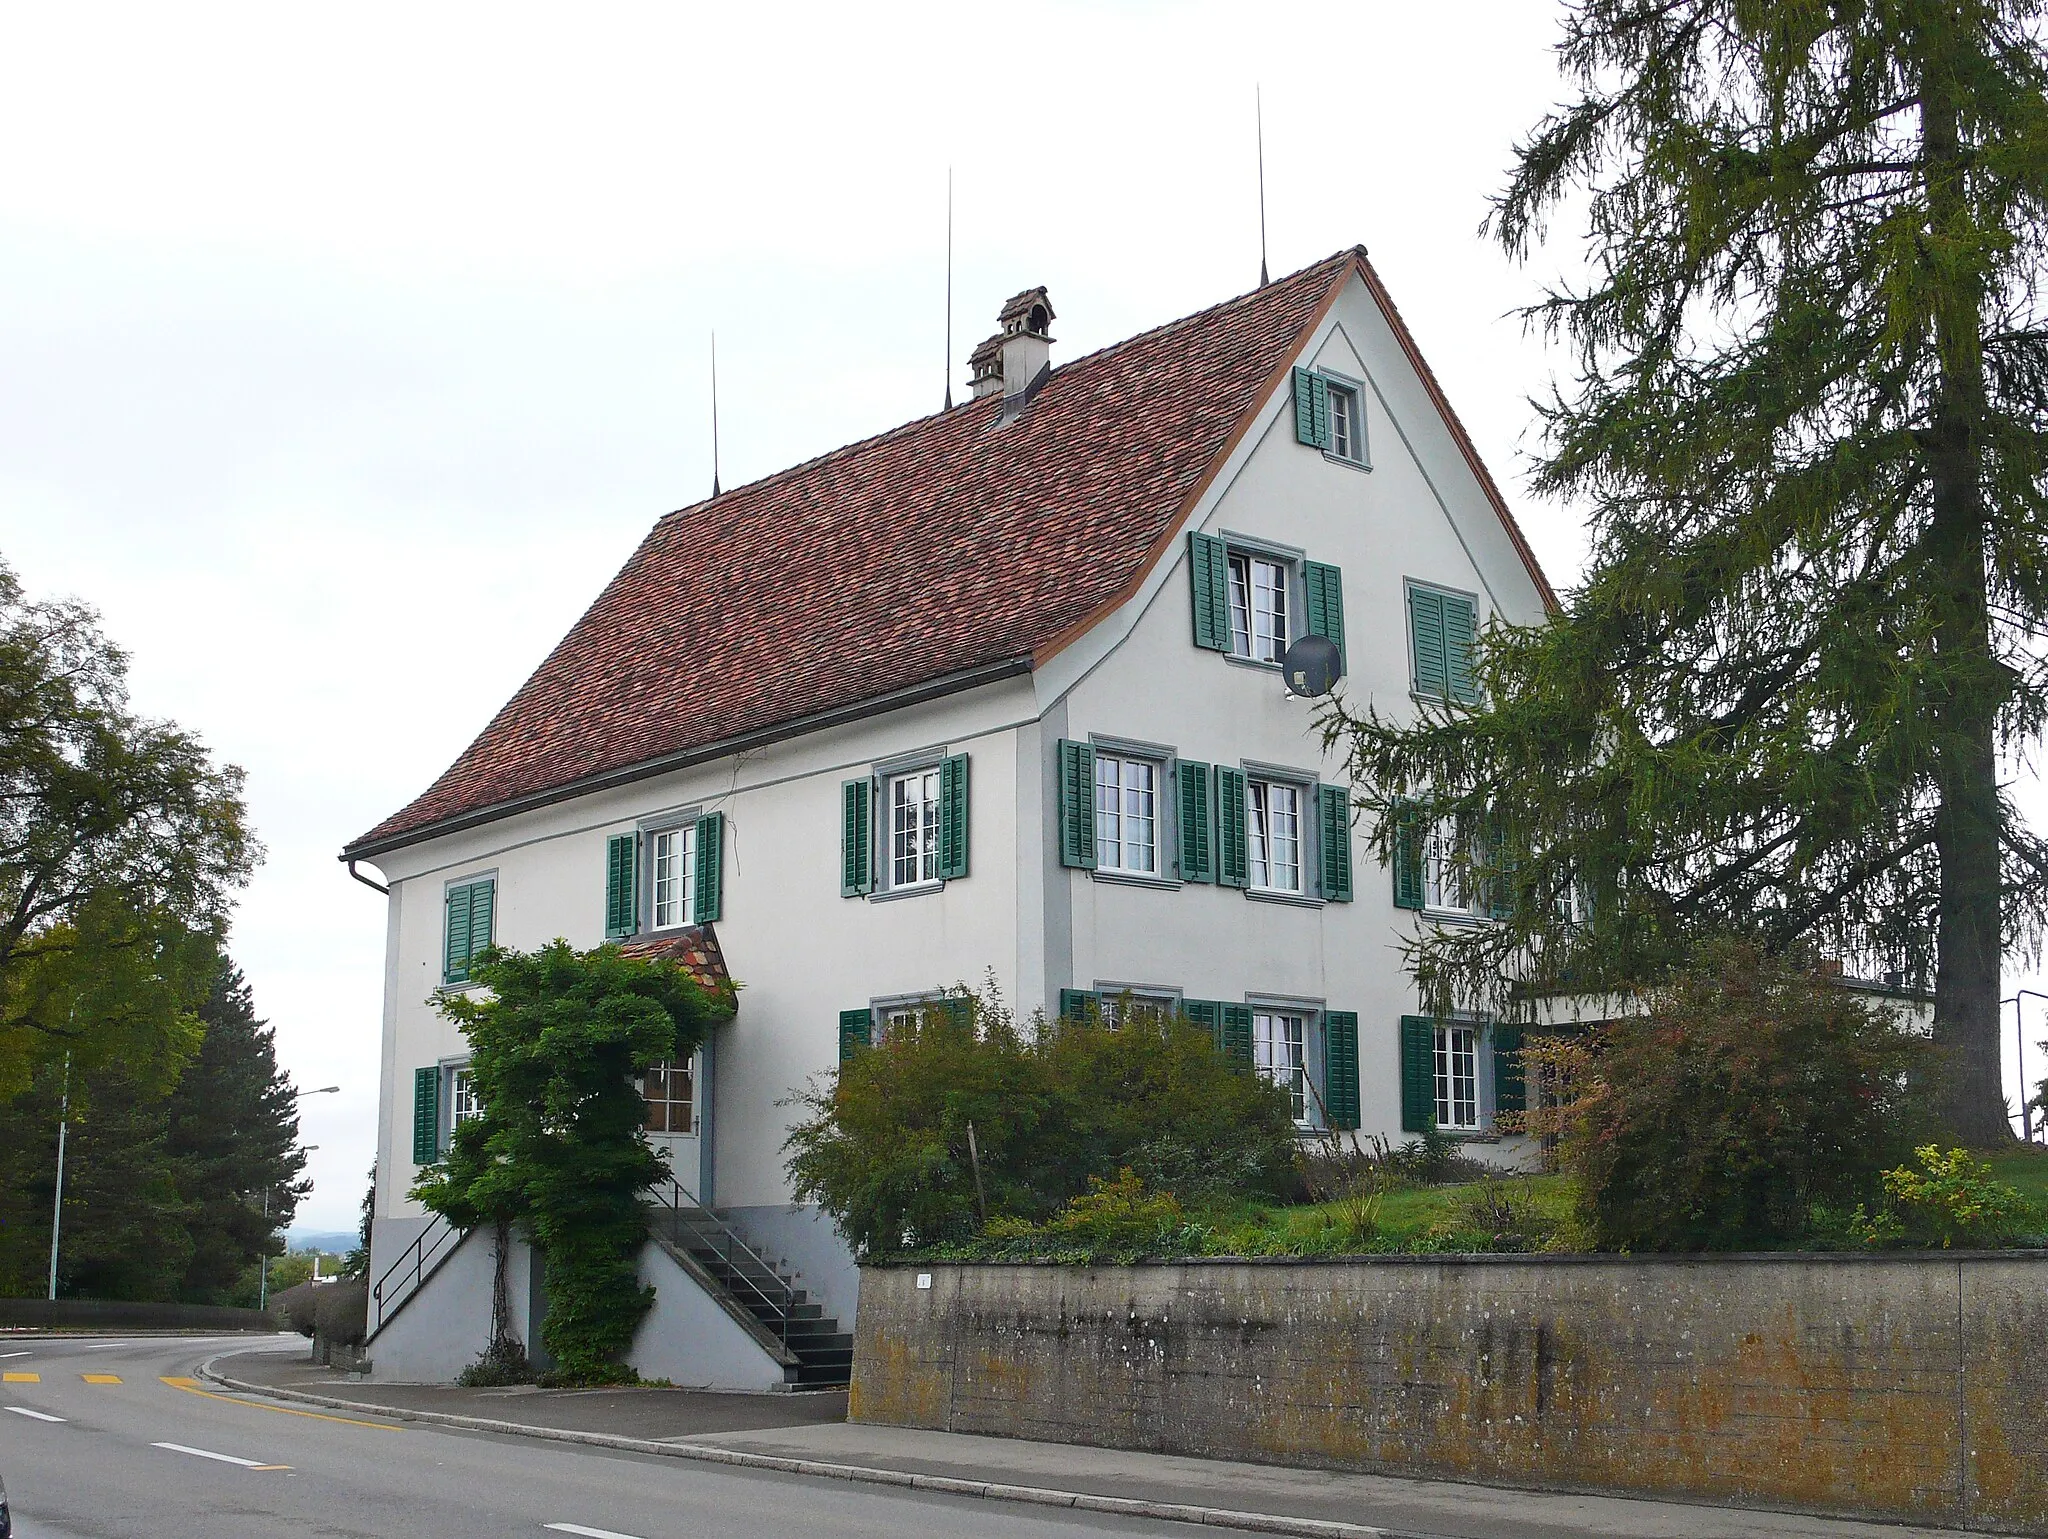 Photo showing: House in Scherzingen, Switzerland.